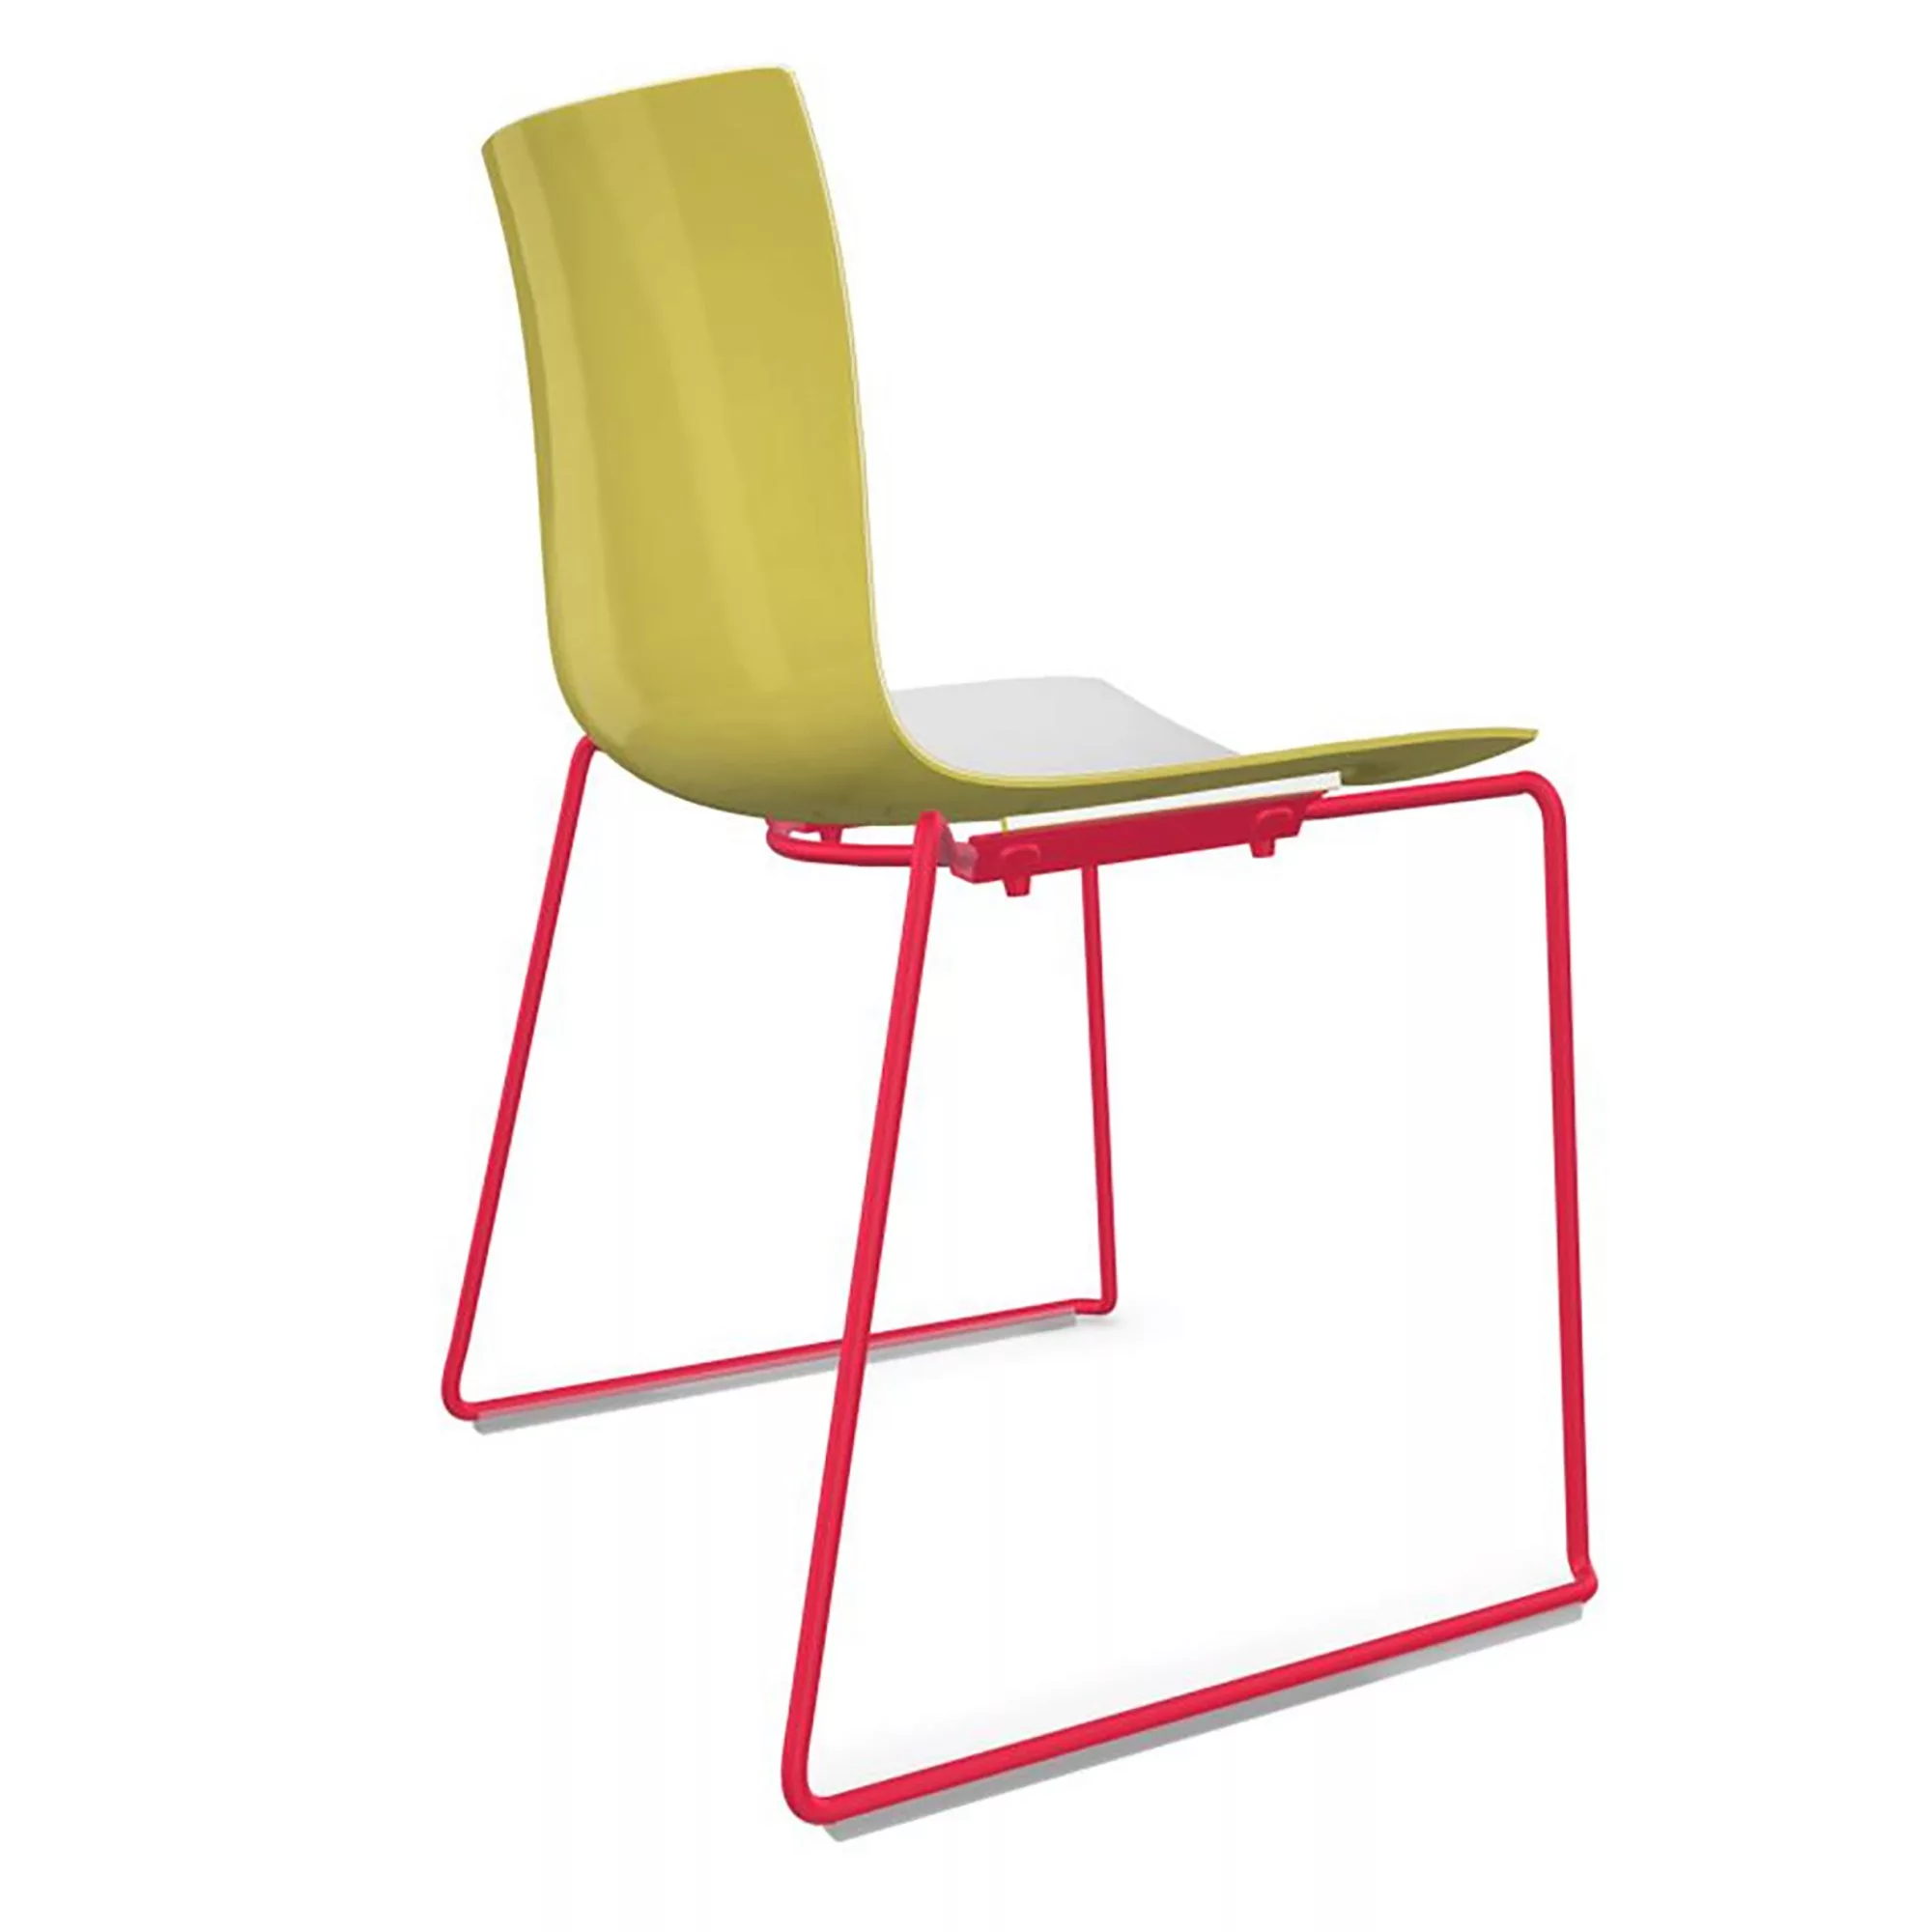 Arper - Catifa 46 0278 Stuhl zweifarbig Kufe farbig - weiß/gelb/Außenschale günstig online kaufen